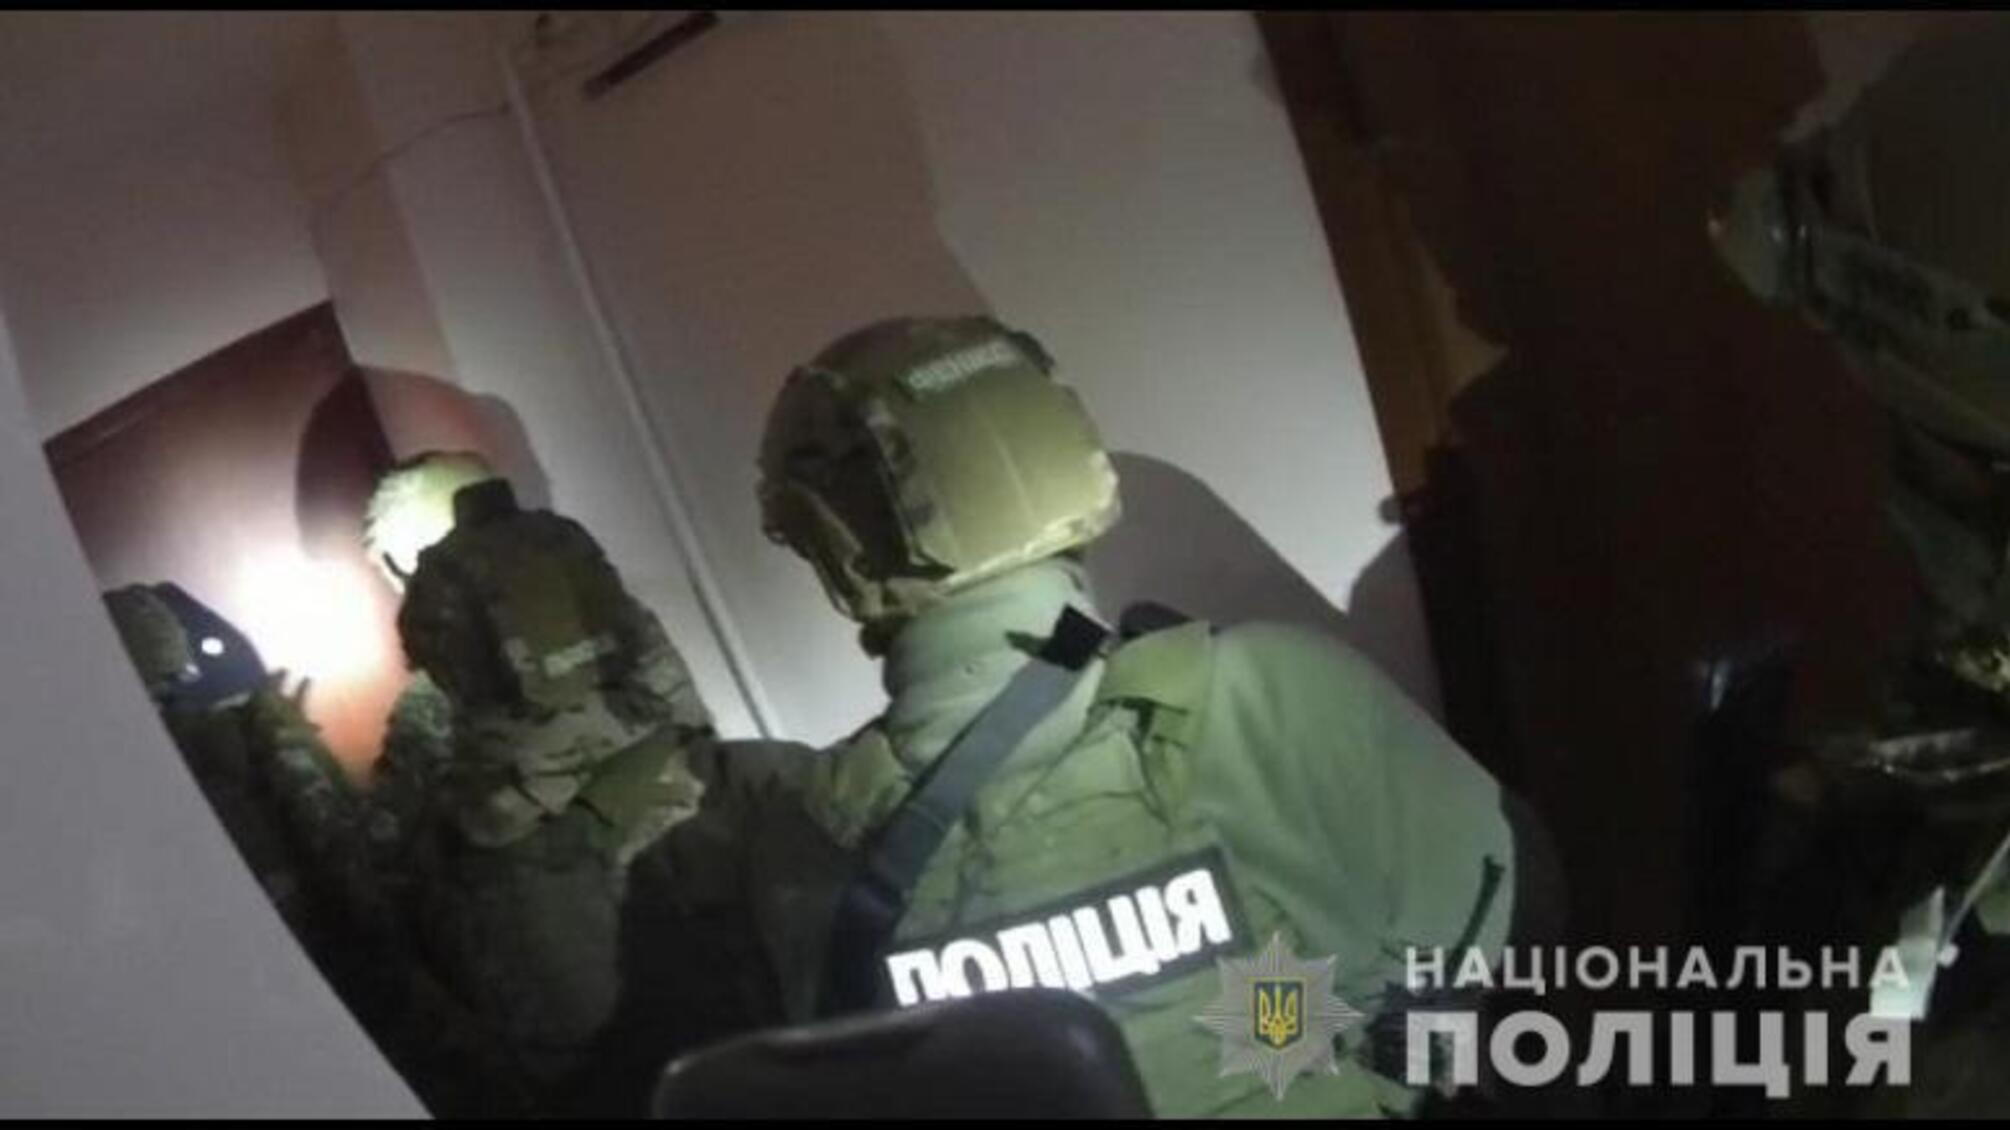 Поліцейські за силової підтримки бійців спецпідрозділу КОРД затримали іноземців, які намагались обікрасти квартиру киянина